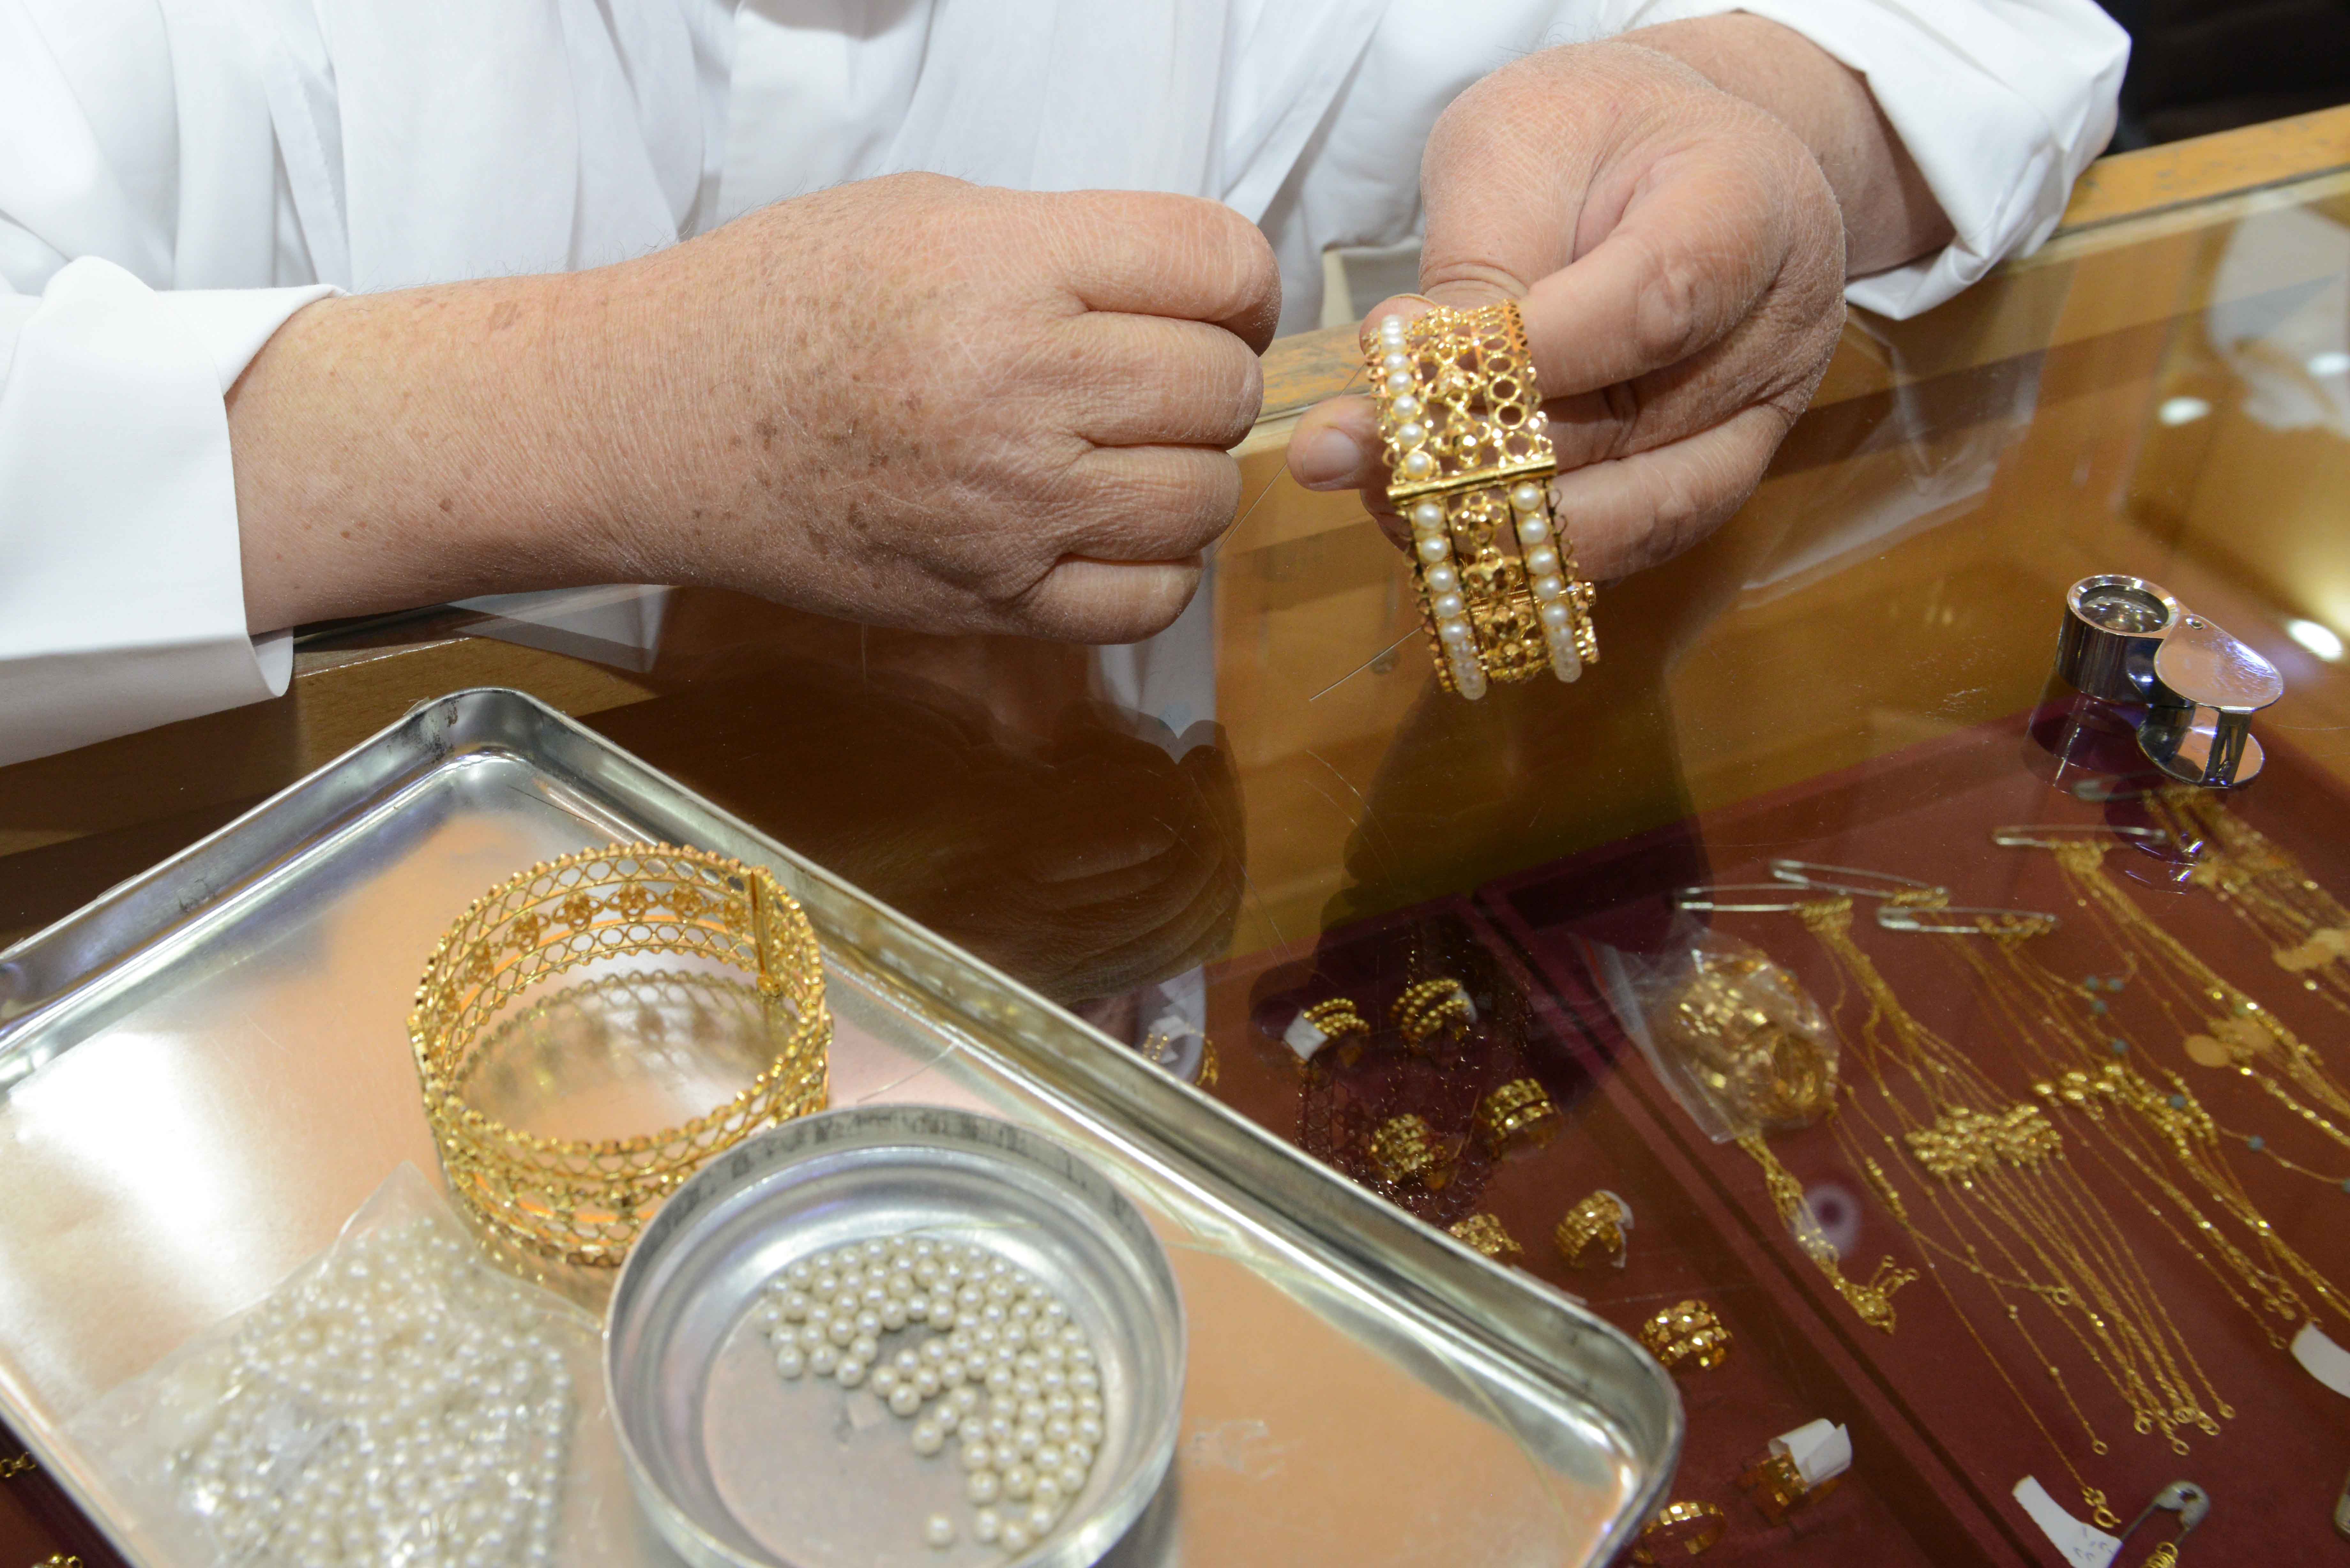 كونا صياغة الذهب حرفة قديمة وفن أجادته أسر كويتية قديما وحديثا عام 07 10 2018